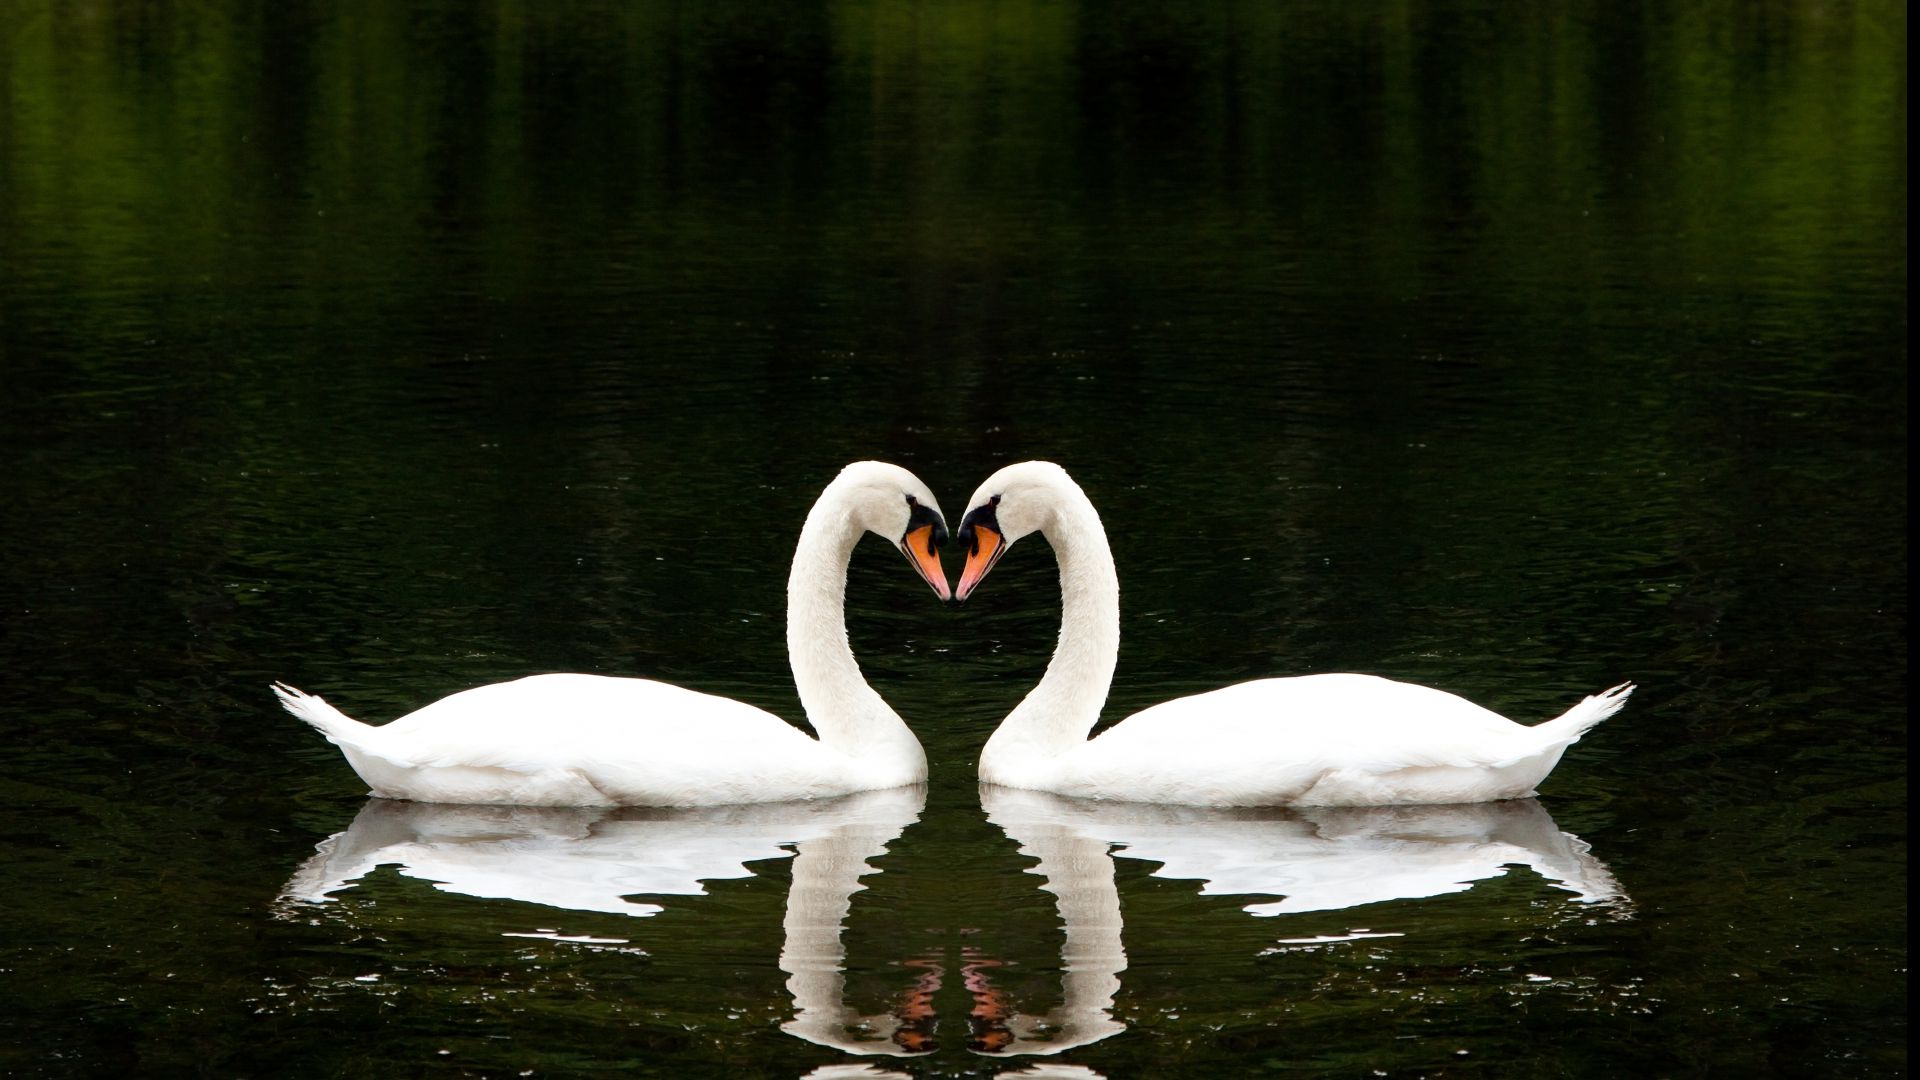 Лебедь, пара, озеро, милые животные, любовь, Swan, couple, lake, cute animals, love (horizontal)